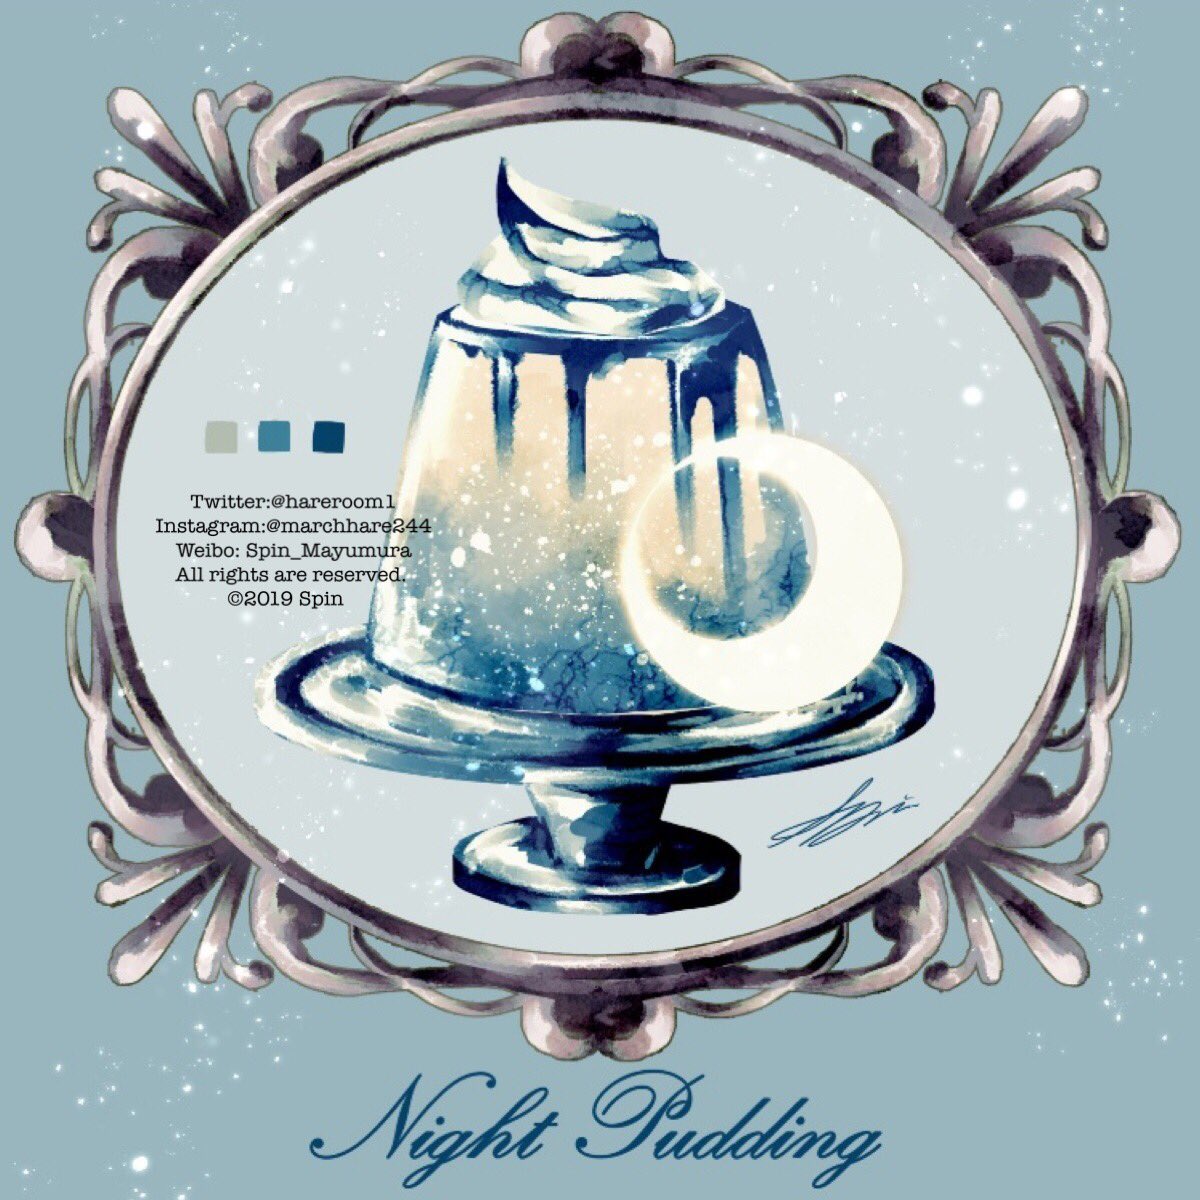 「架空喫茶「Night Sky」 」|Spin@3.25~26出版記念展/作品集2巻発売中のイラスト